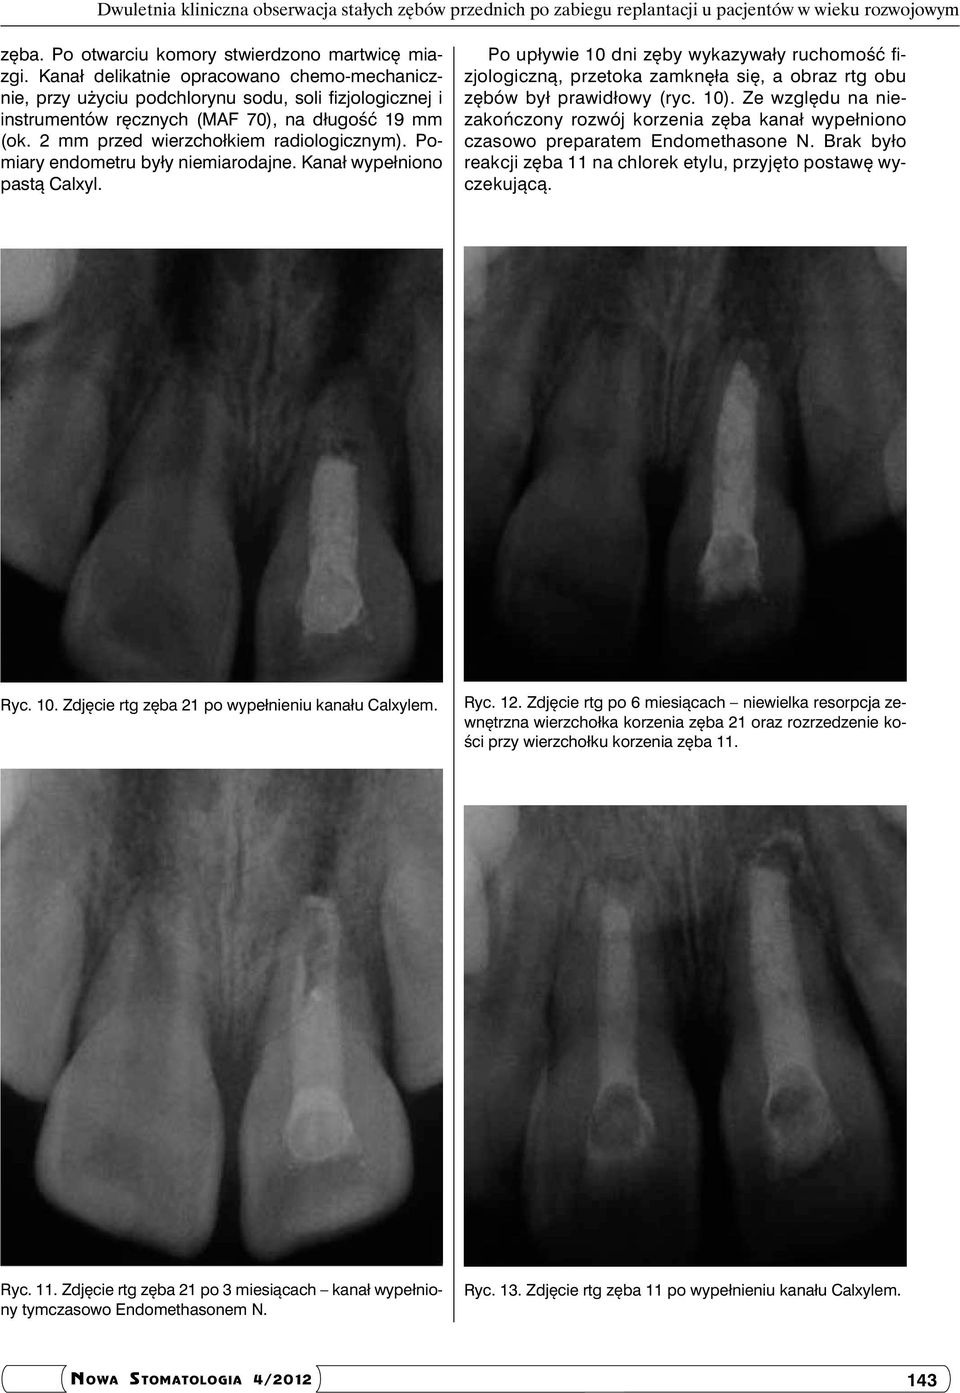 Pomiary endometru były niemiarodajne. Kanał wypełniono pastą Calxyl. Po upływie 10 dni zęby wykazywały ruchomość fizjologiczną, przetoka zamknęła się, a obraz rtg obu zębów był prawidłowy (ryc. 10).